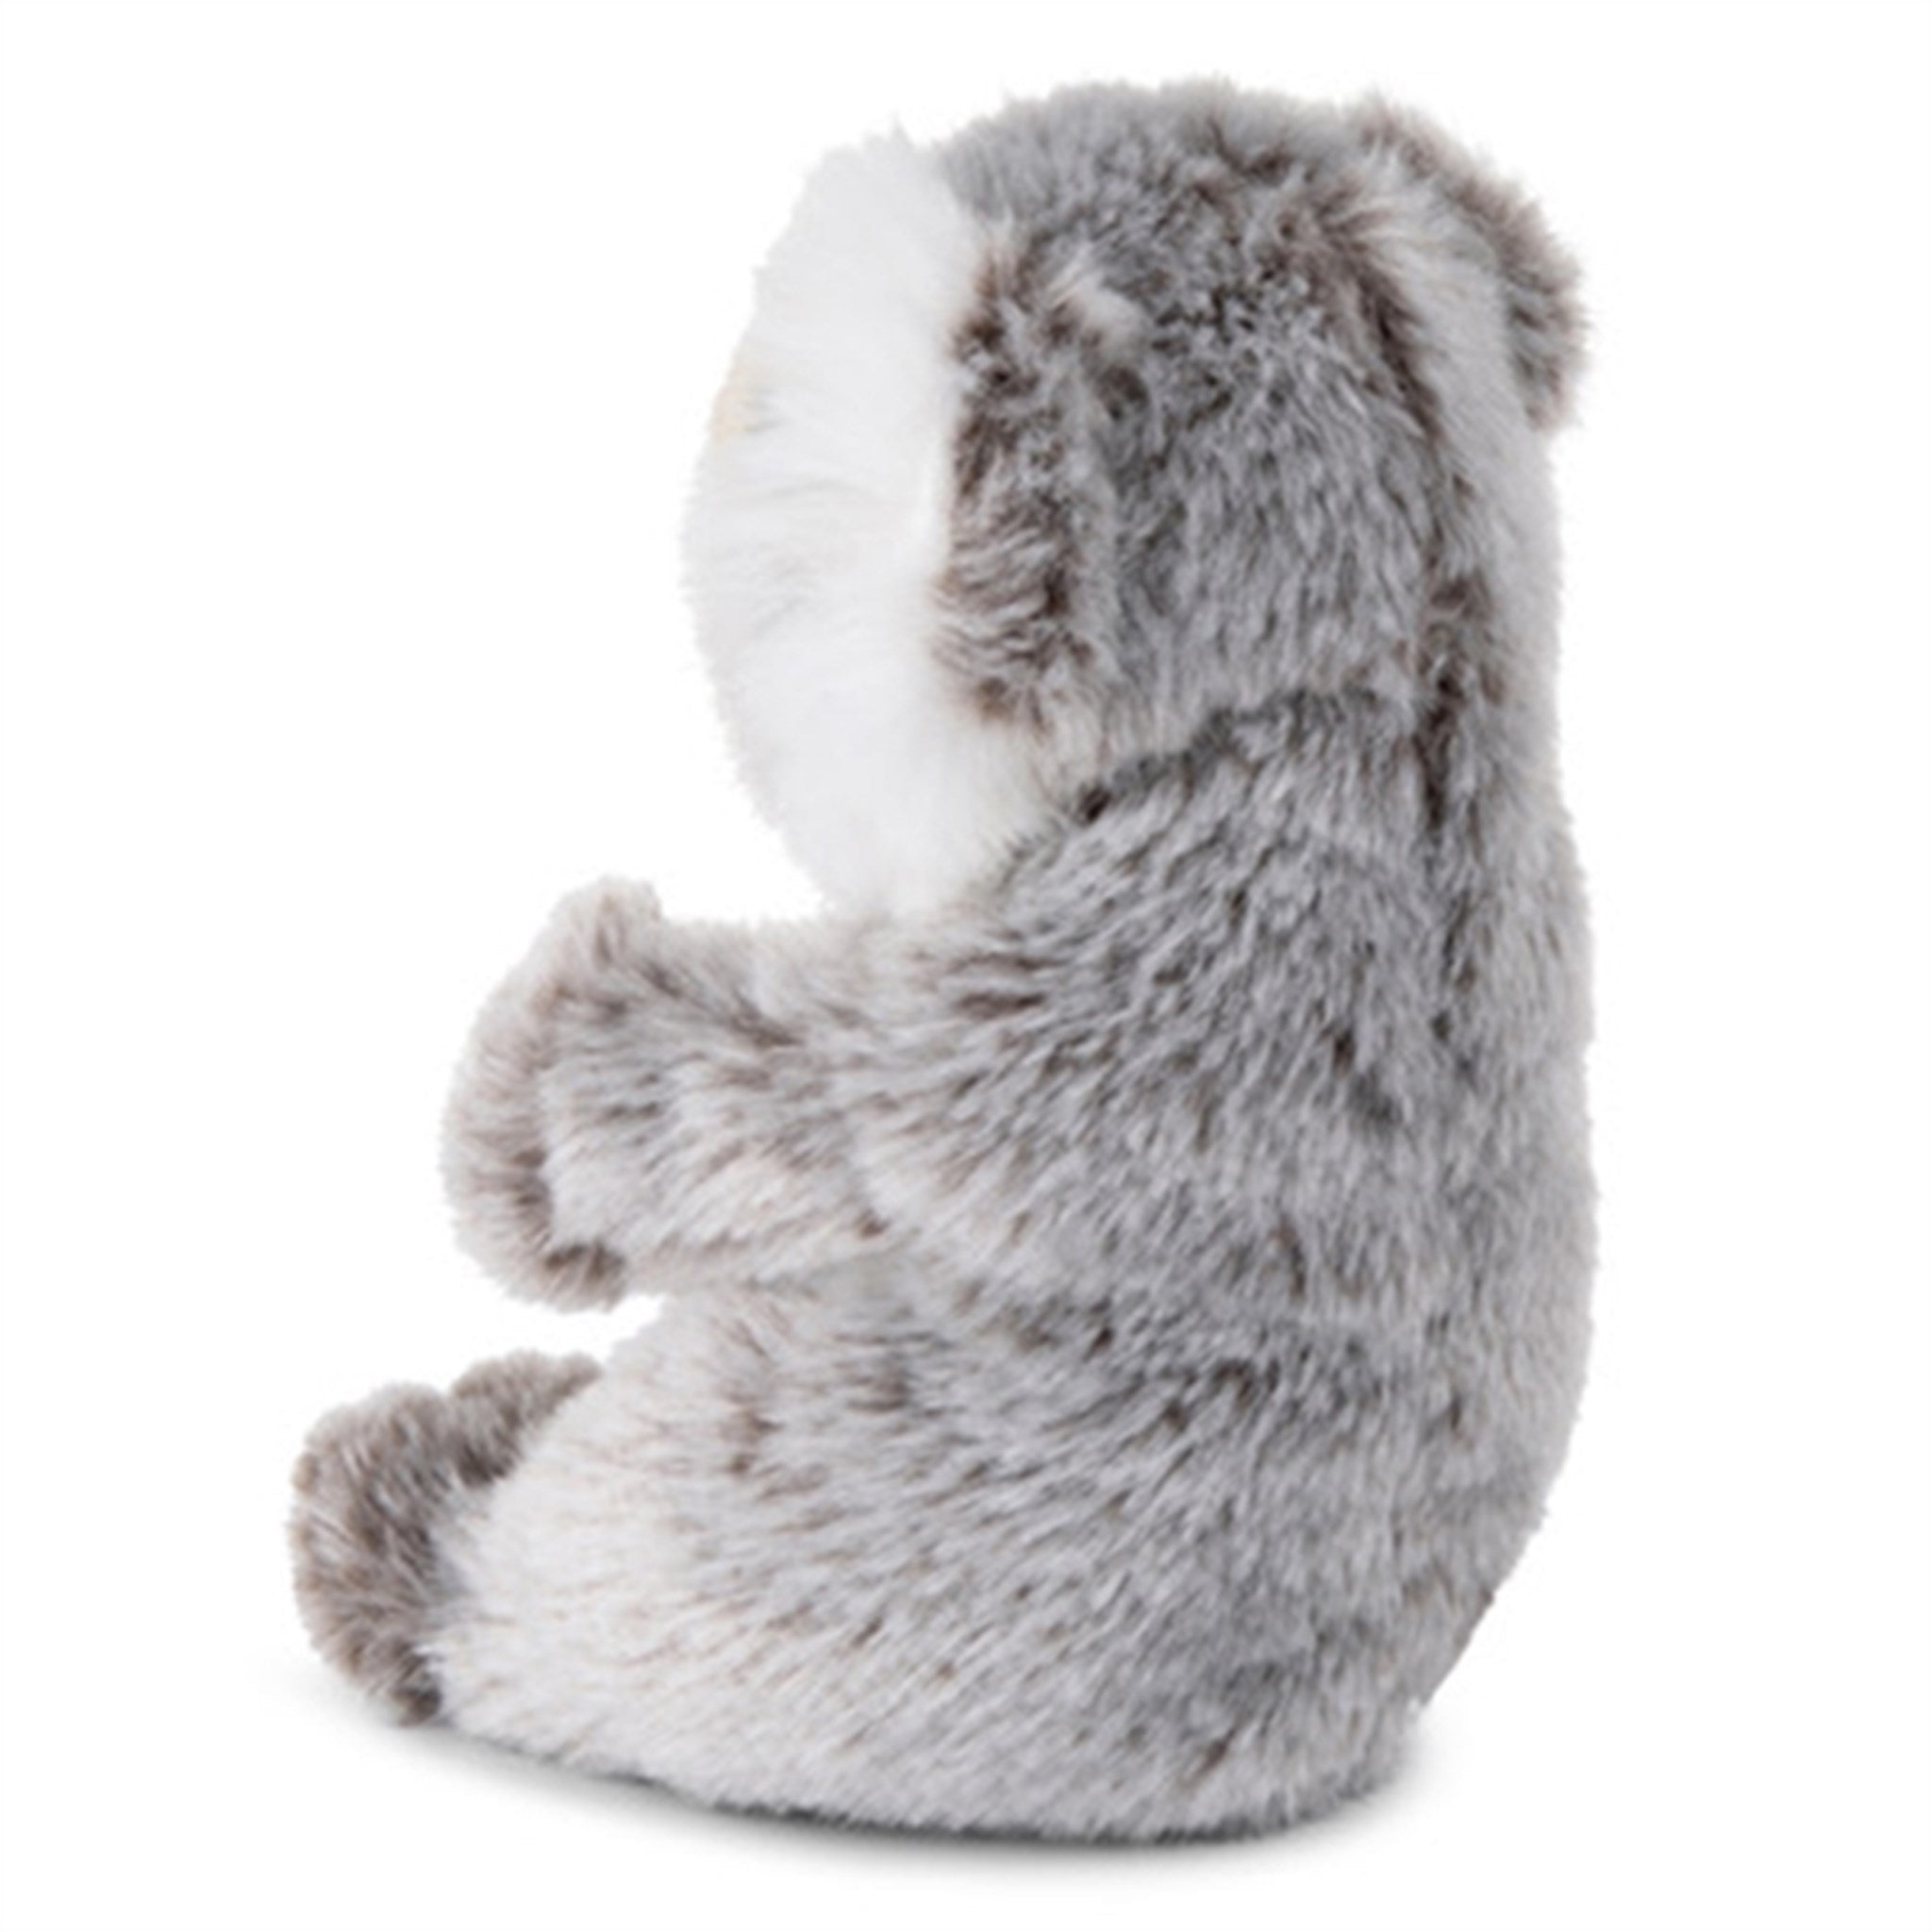 Bon Ton Toys WWF Plush Koala 15 cm 2